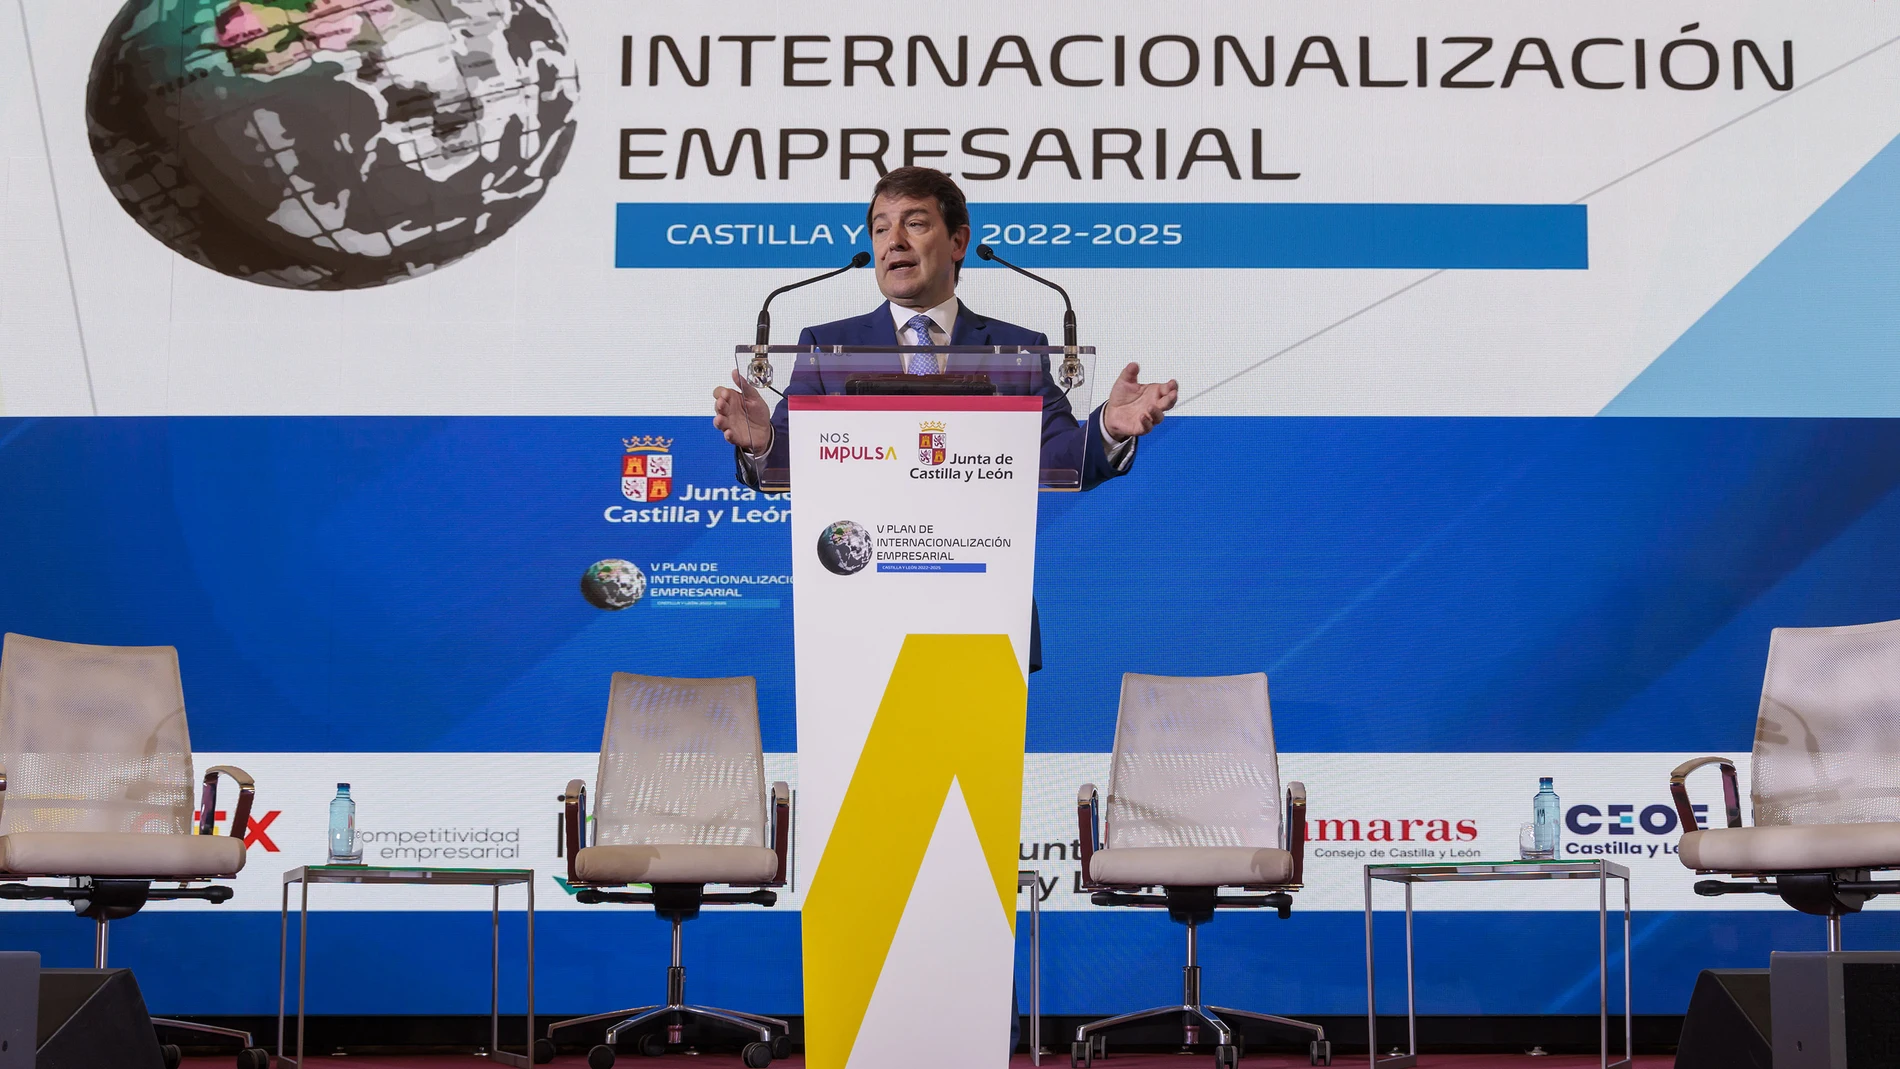 El presidente de Castilla y León, Alfonso Fernández Mañueco, presenta el V Plan de Internacionalización Empresarial